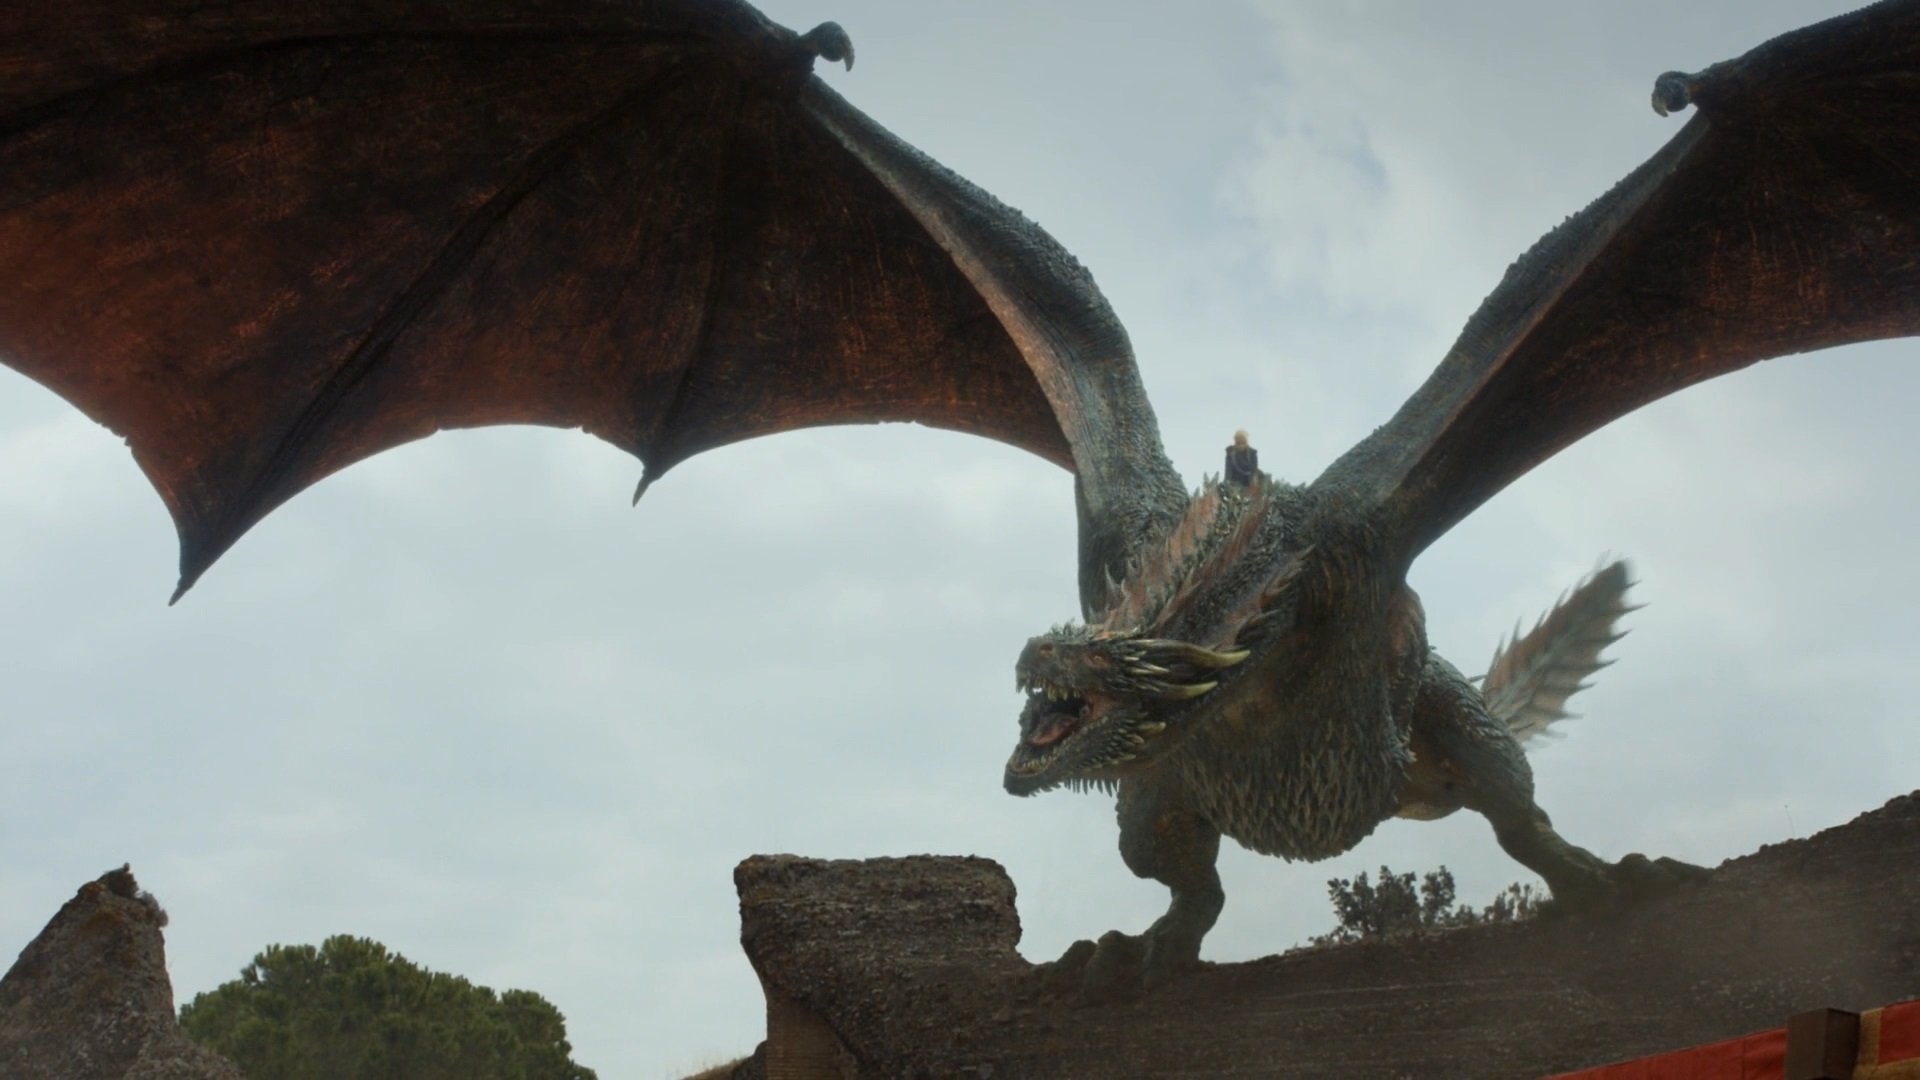 Juego De Tronos - Game Of Thrones Season 8 Drogon , HD Wallpaper & Backgrounds